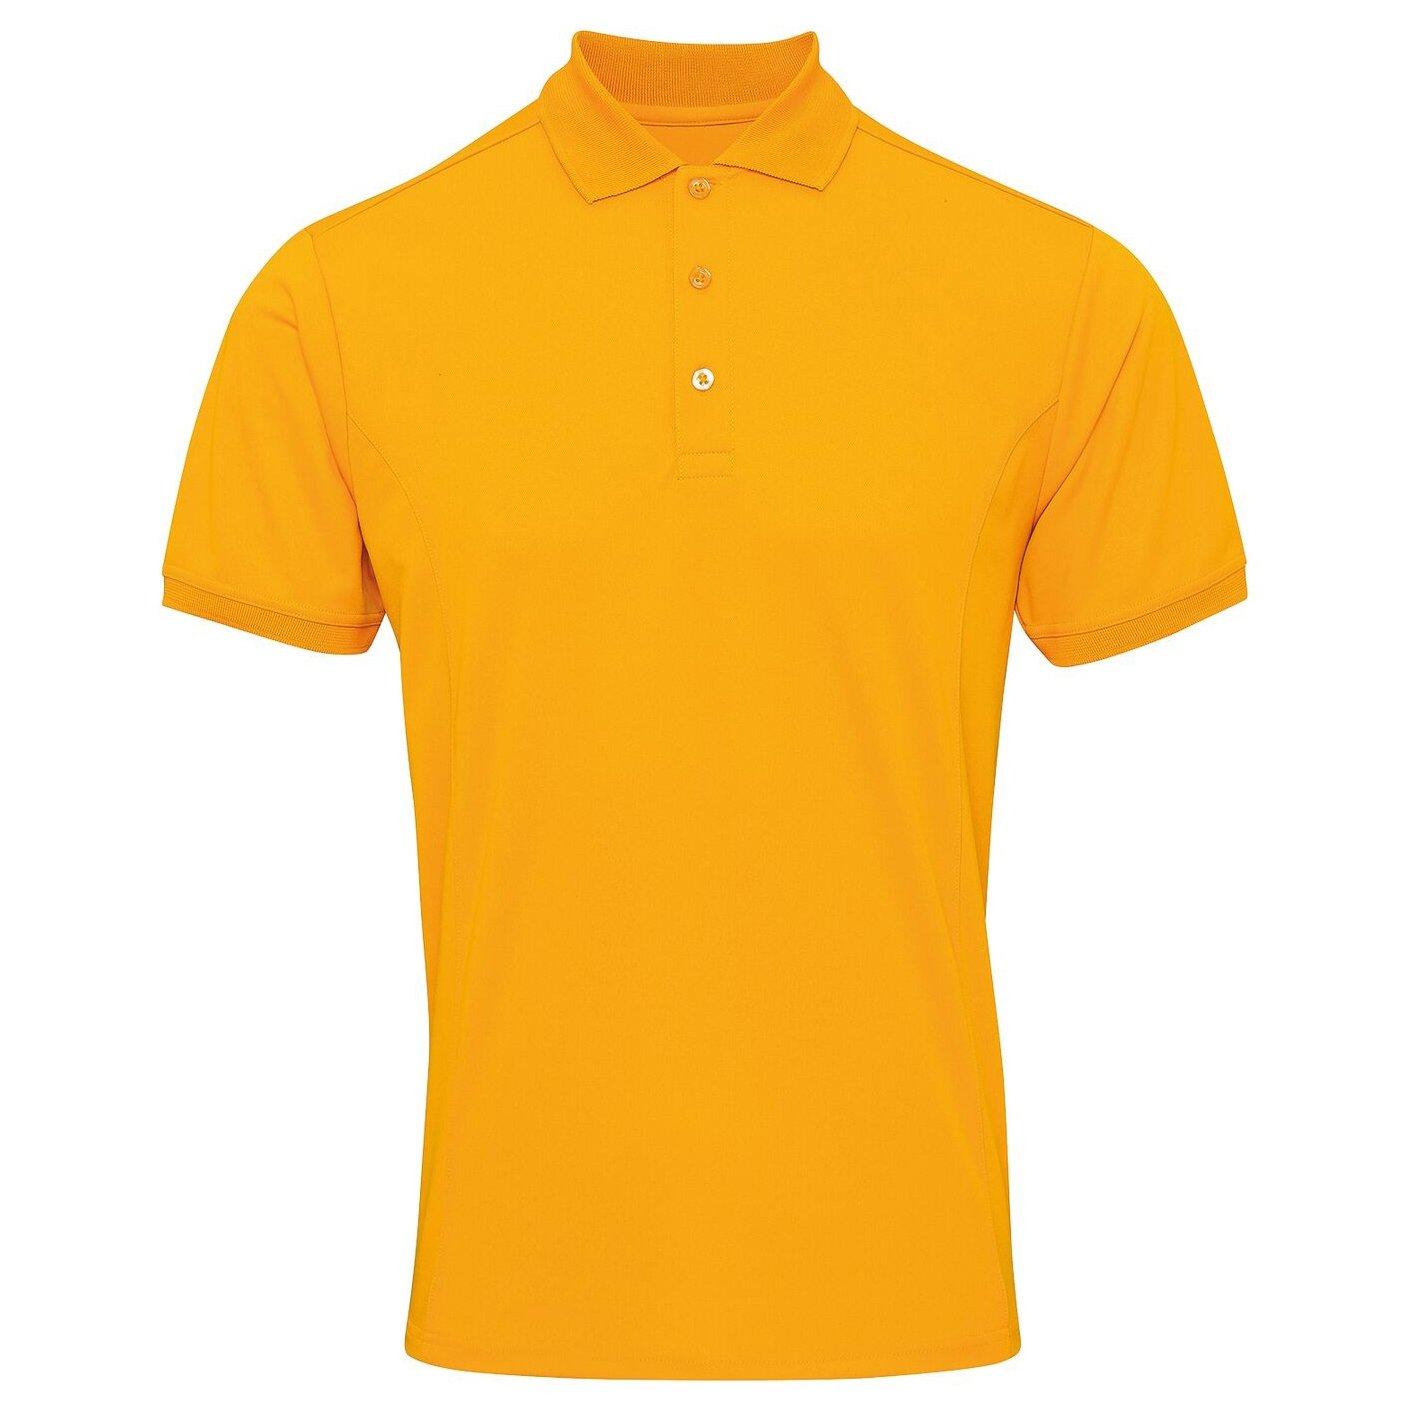 Coolchecker Pique Kurzarm Polo Tshirt Herren Gelb Orangé XL